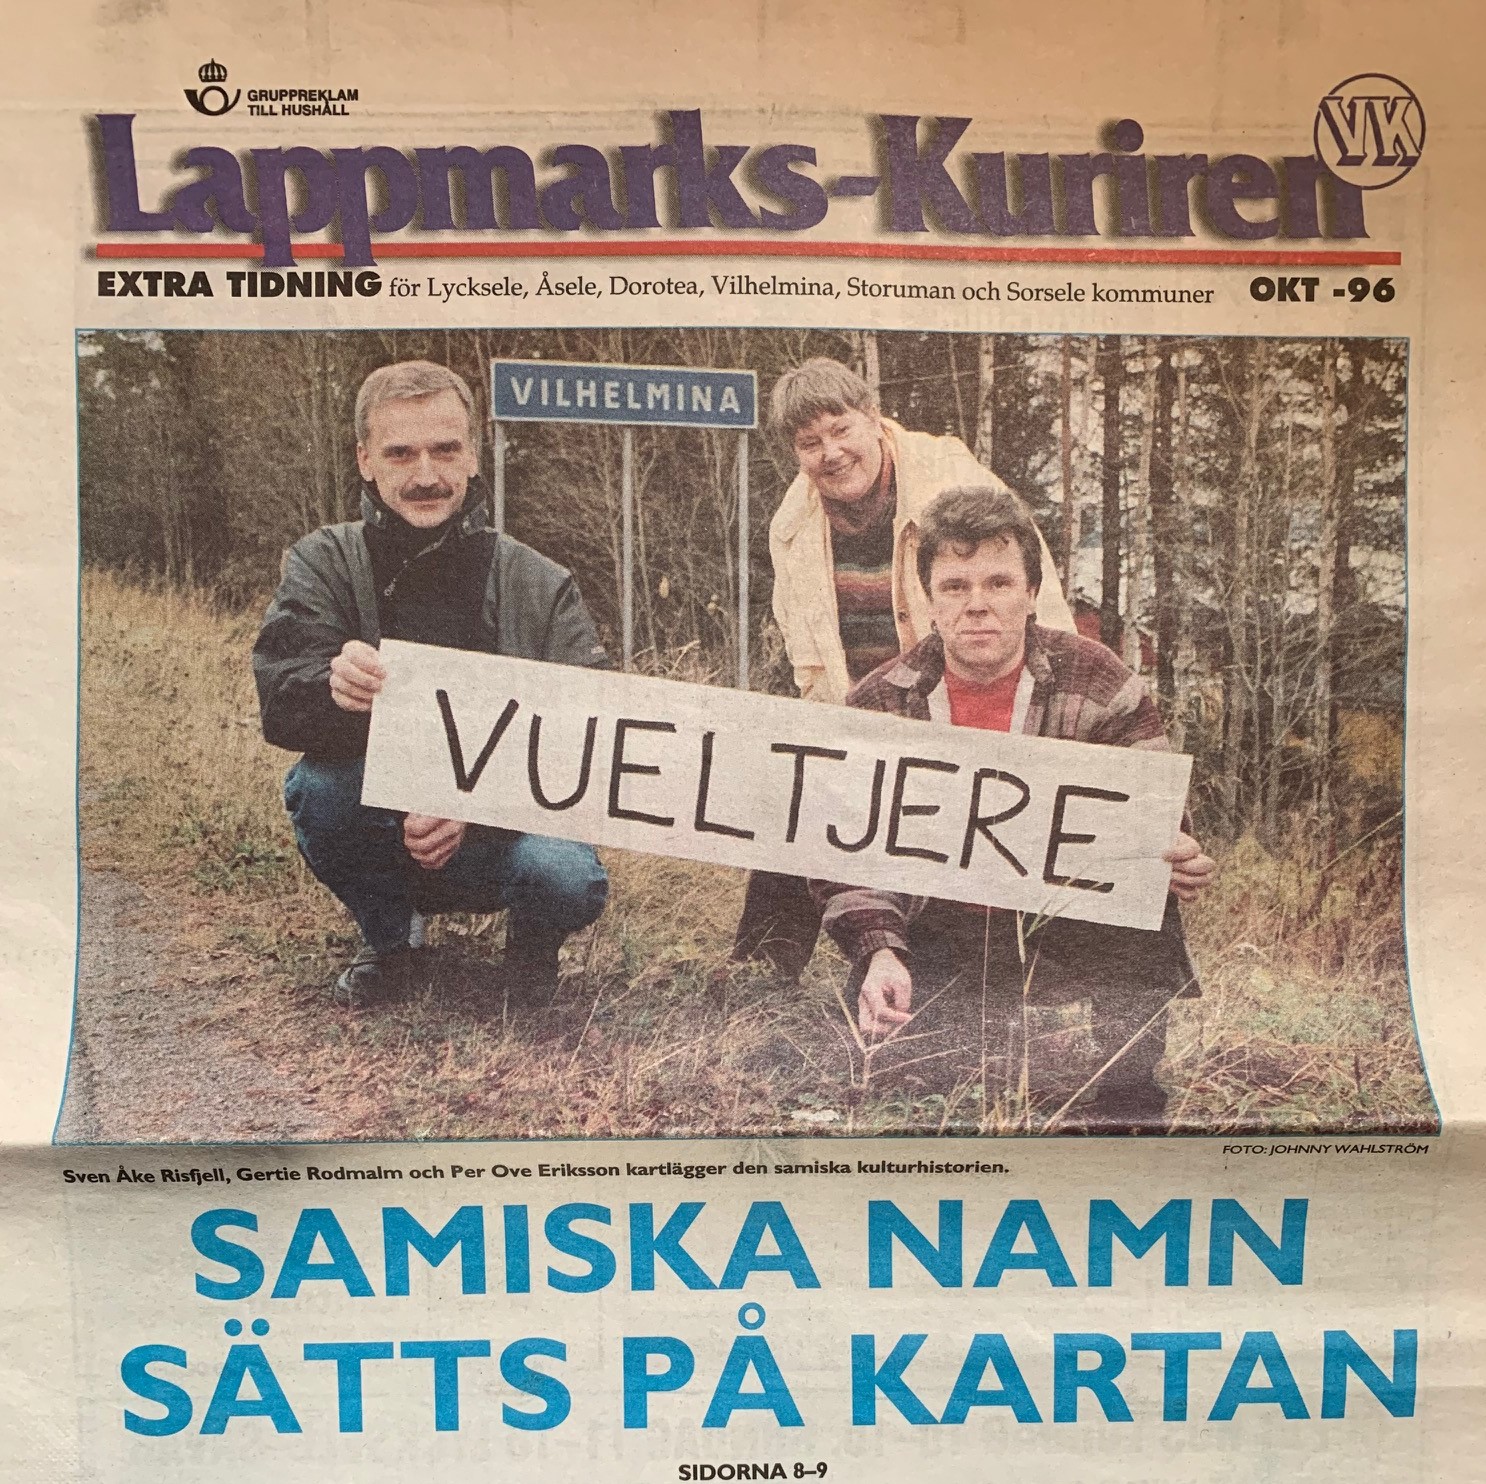 En artikel från Lappmarkskuriren om samiska ortnamnsforskningen som drogs igåmg av Sven-Åke Risfjell i Vueltjere Duodji den samiska förening han starat i Vilhelmina 1992